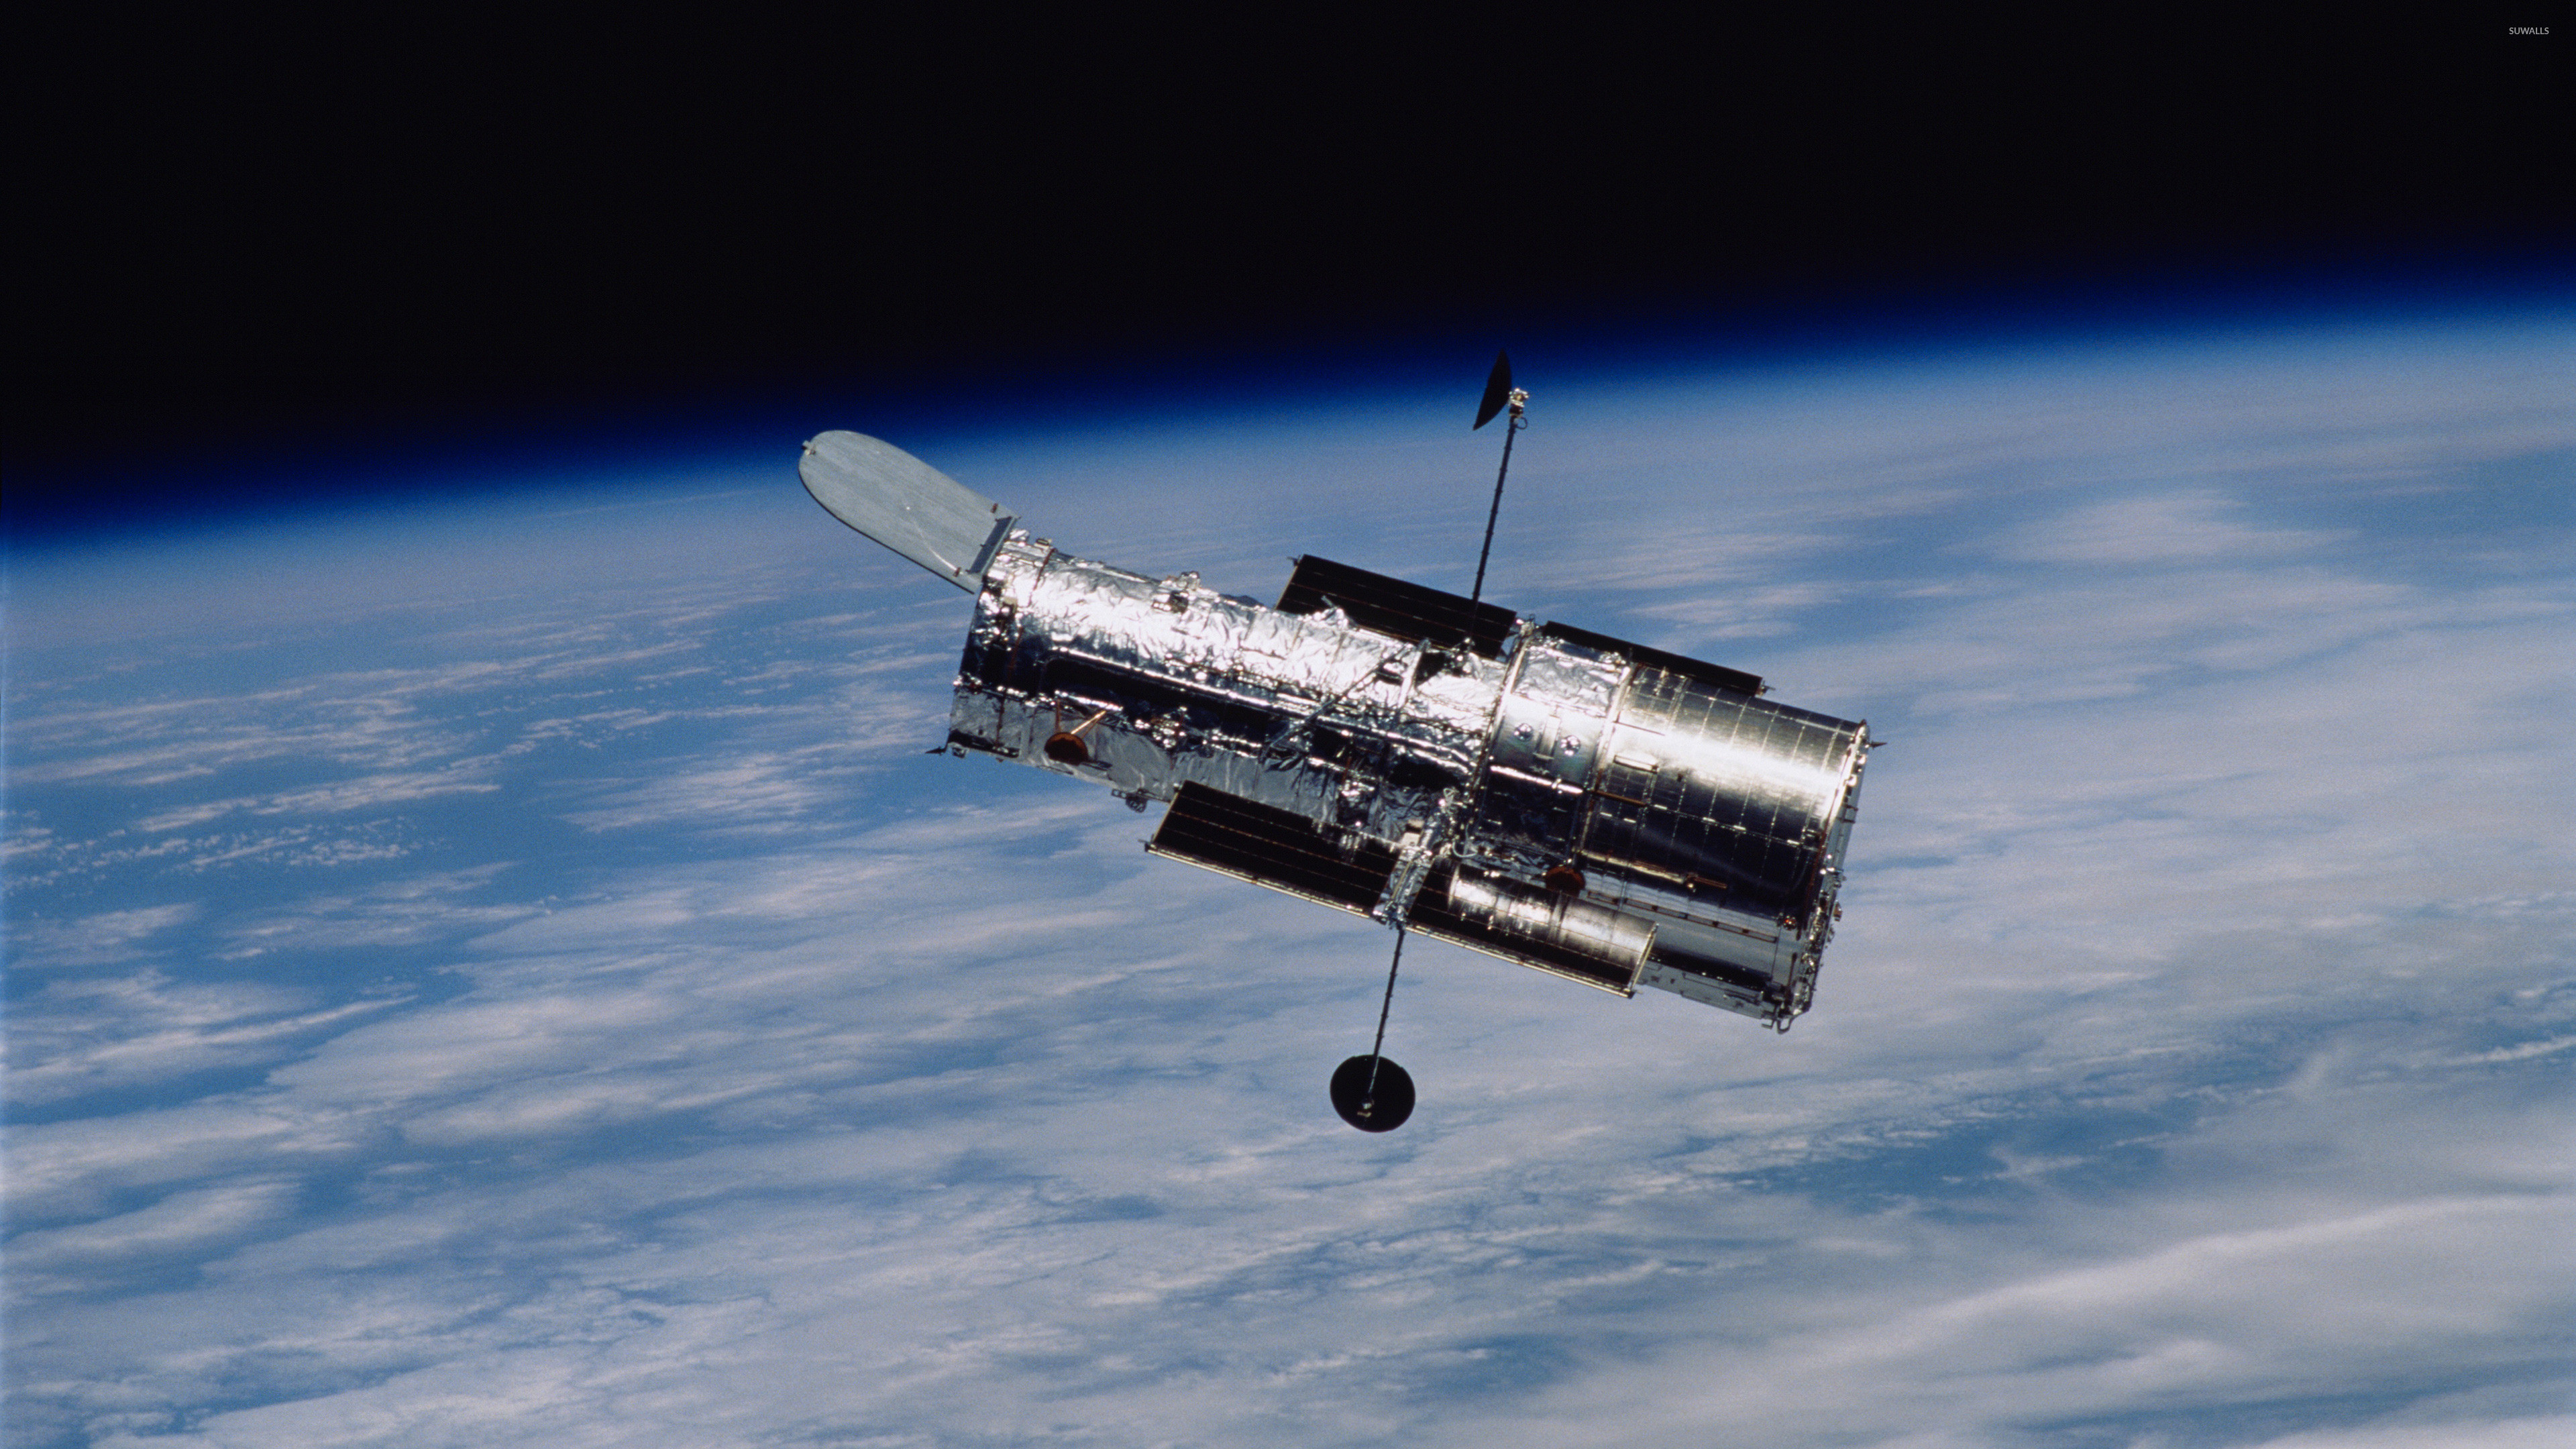 3840x2160 Hubble Space Telescope in orbit wallpaper